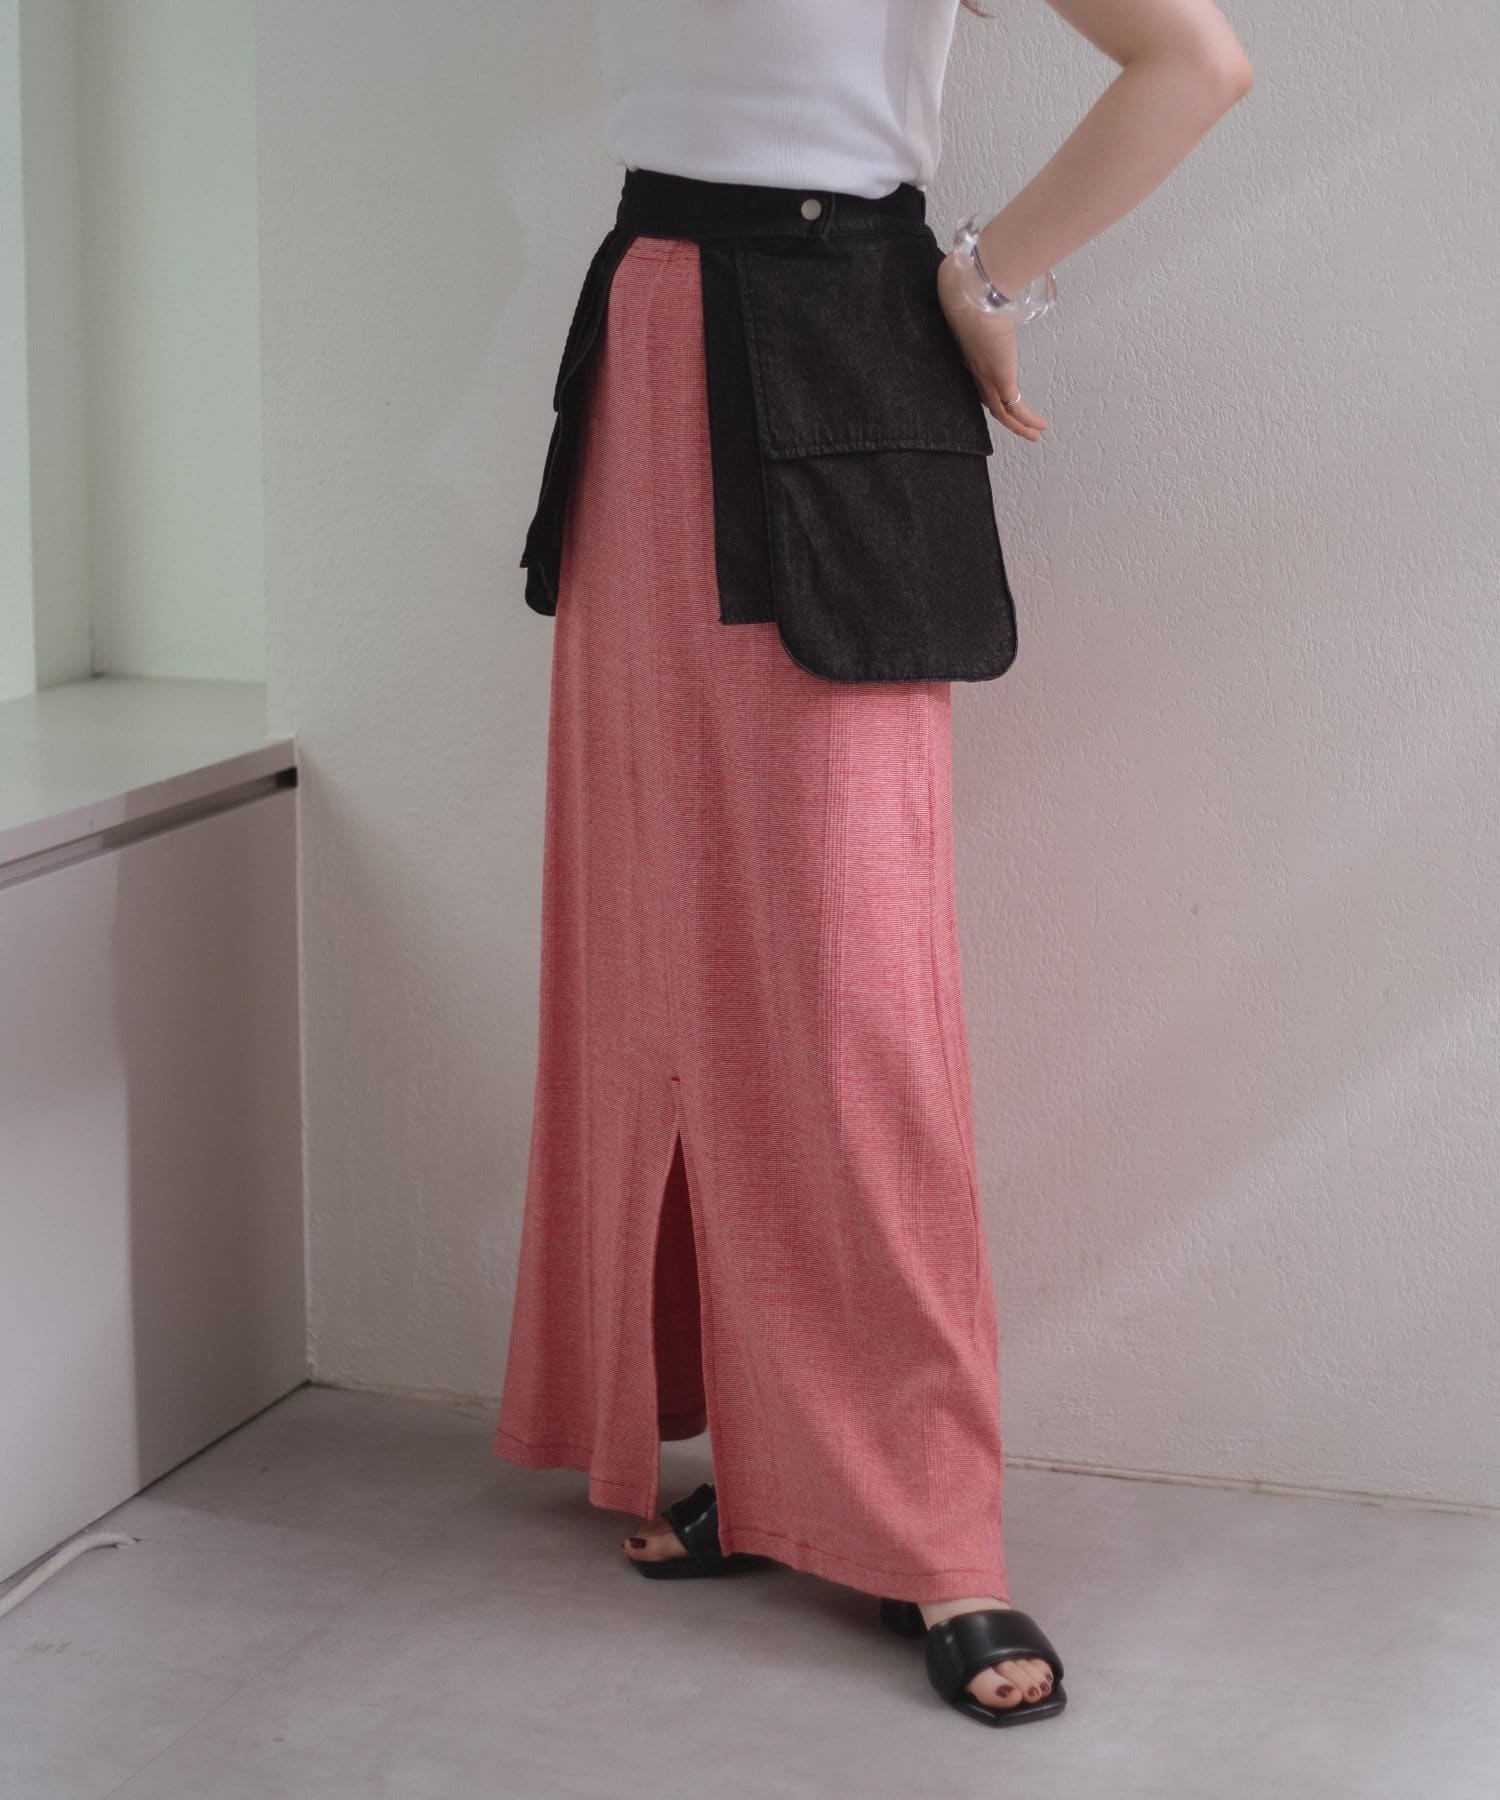 Kastane(カスタネ) 【Miller別注】Cotton border slit skirt